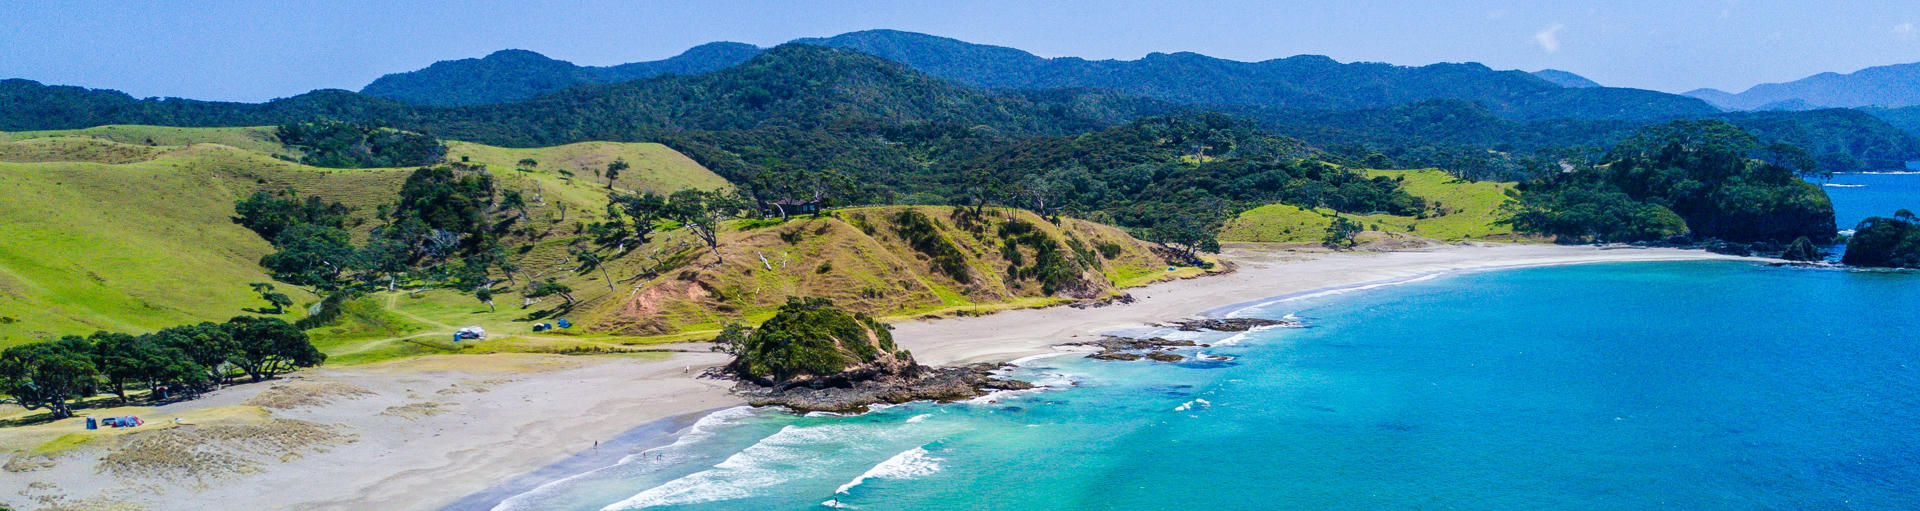 natürlich Landschaft in den Bay of Islands Neuseeland mit grünen Wiesen einer Bucht mit Strand und klarem Wasser.